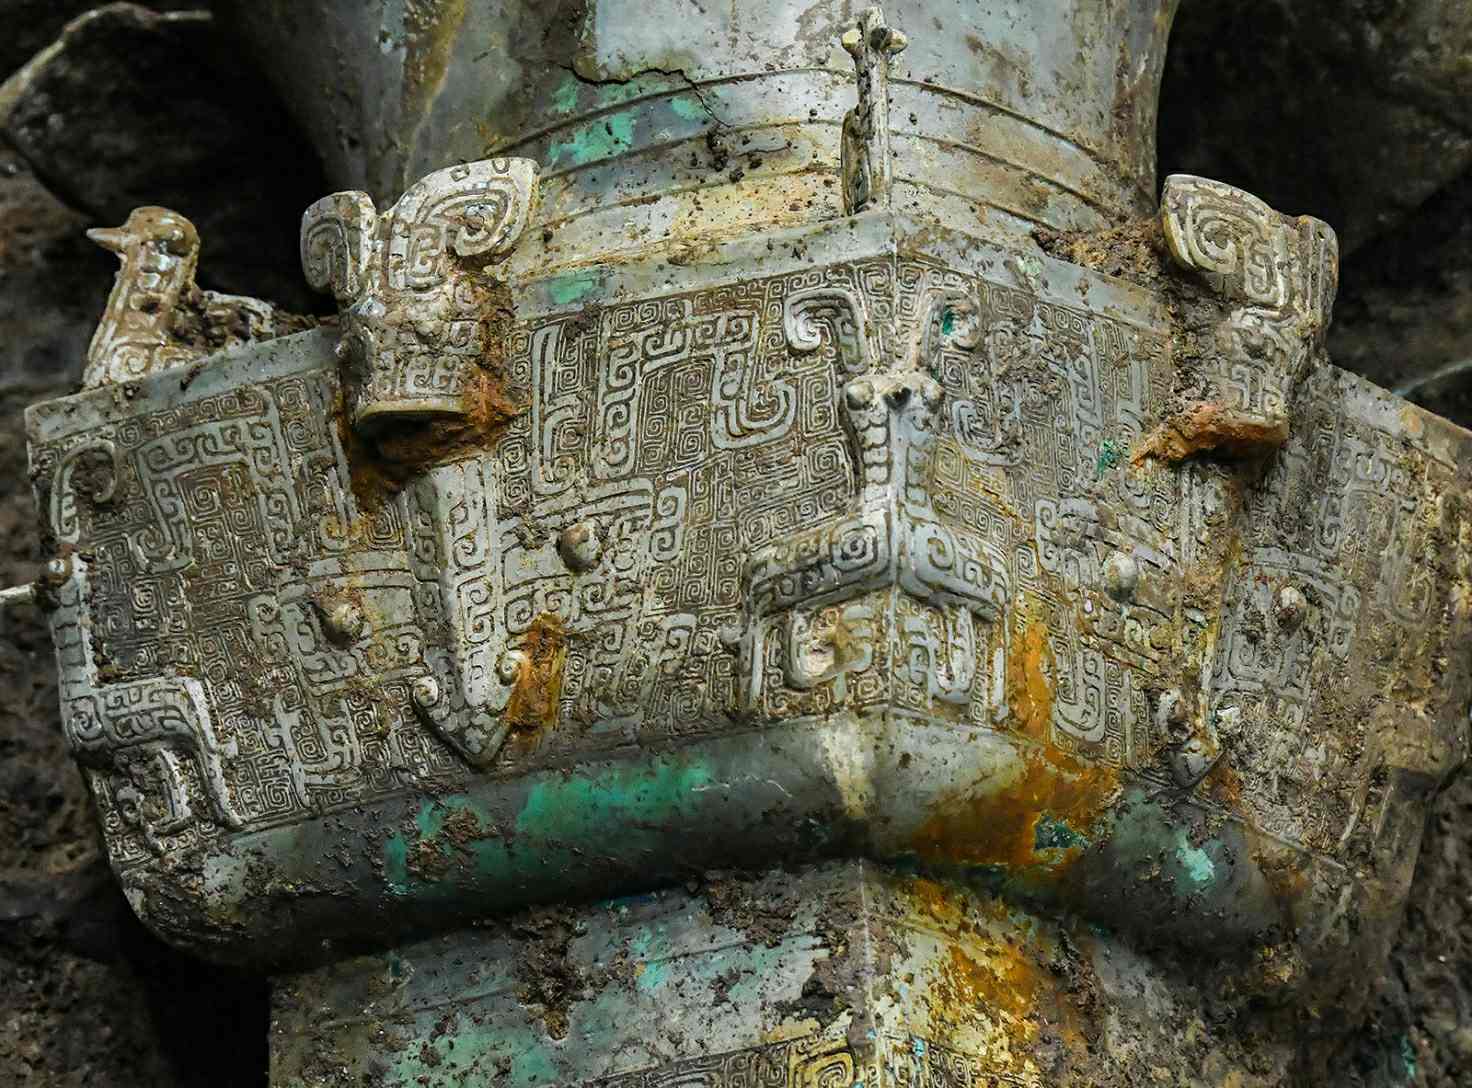 ثقافتی آثار 3 مارچ 20 کو چین کے صوبہ دیوانگ کے سینگنگدوئی کھنڈرات کے مقام کے نمبر 2021 قربانی کے گڑھے پر دریافت ہوئے ہیں۔